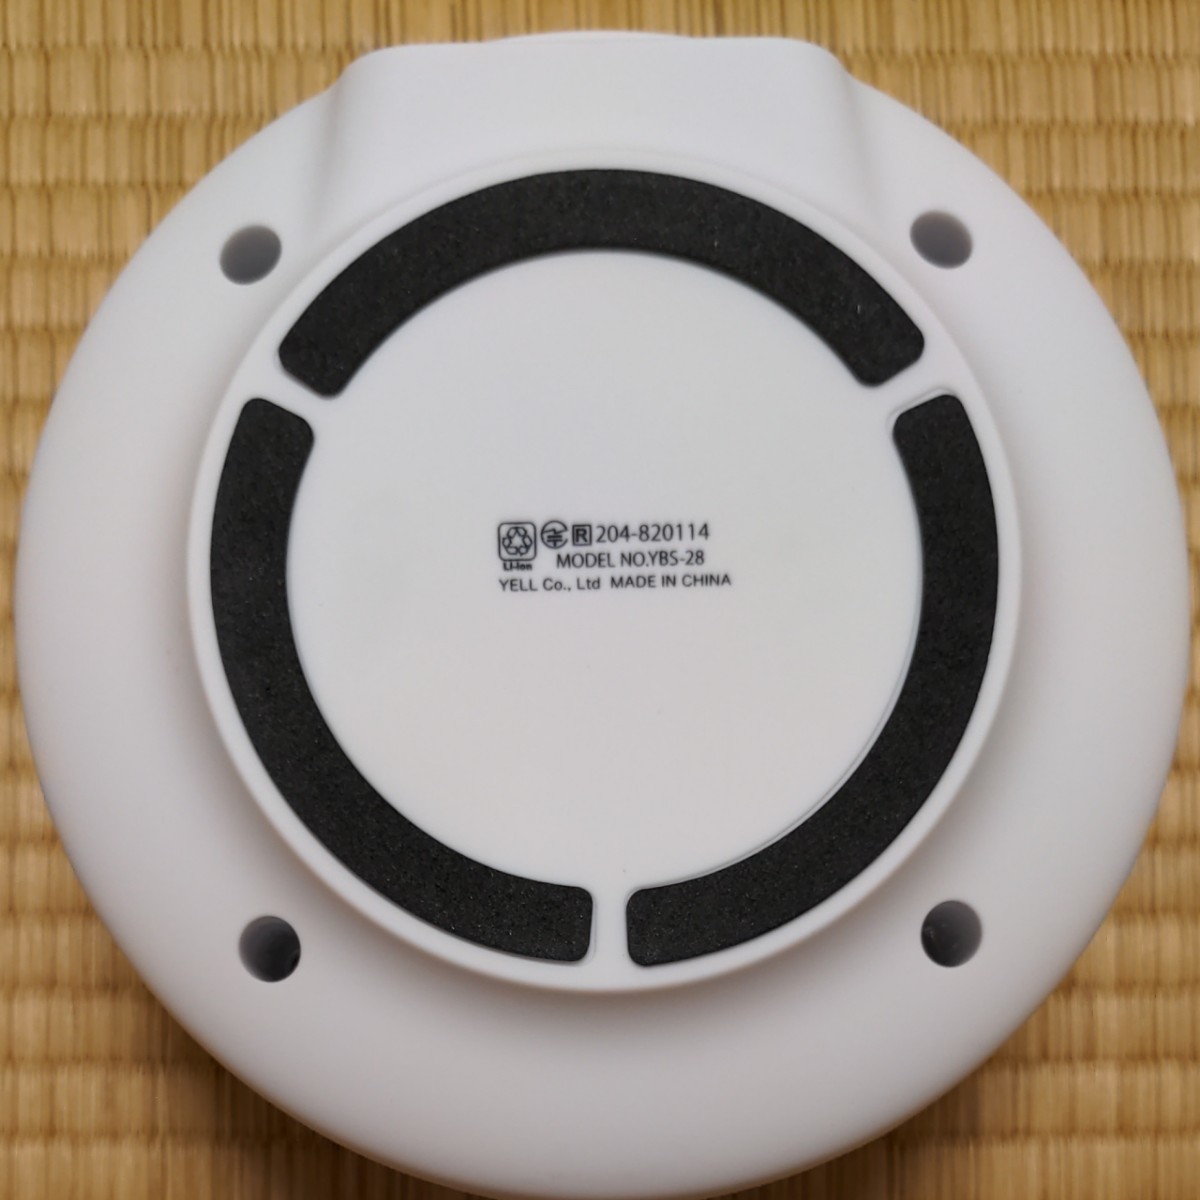 全方向型BTスピーカー Dome ドーム 3 Bluetooth 4.2 ホワイト グレー 発売元：株式会社 エール